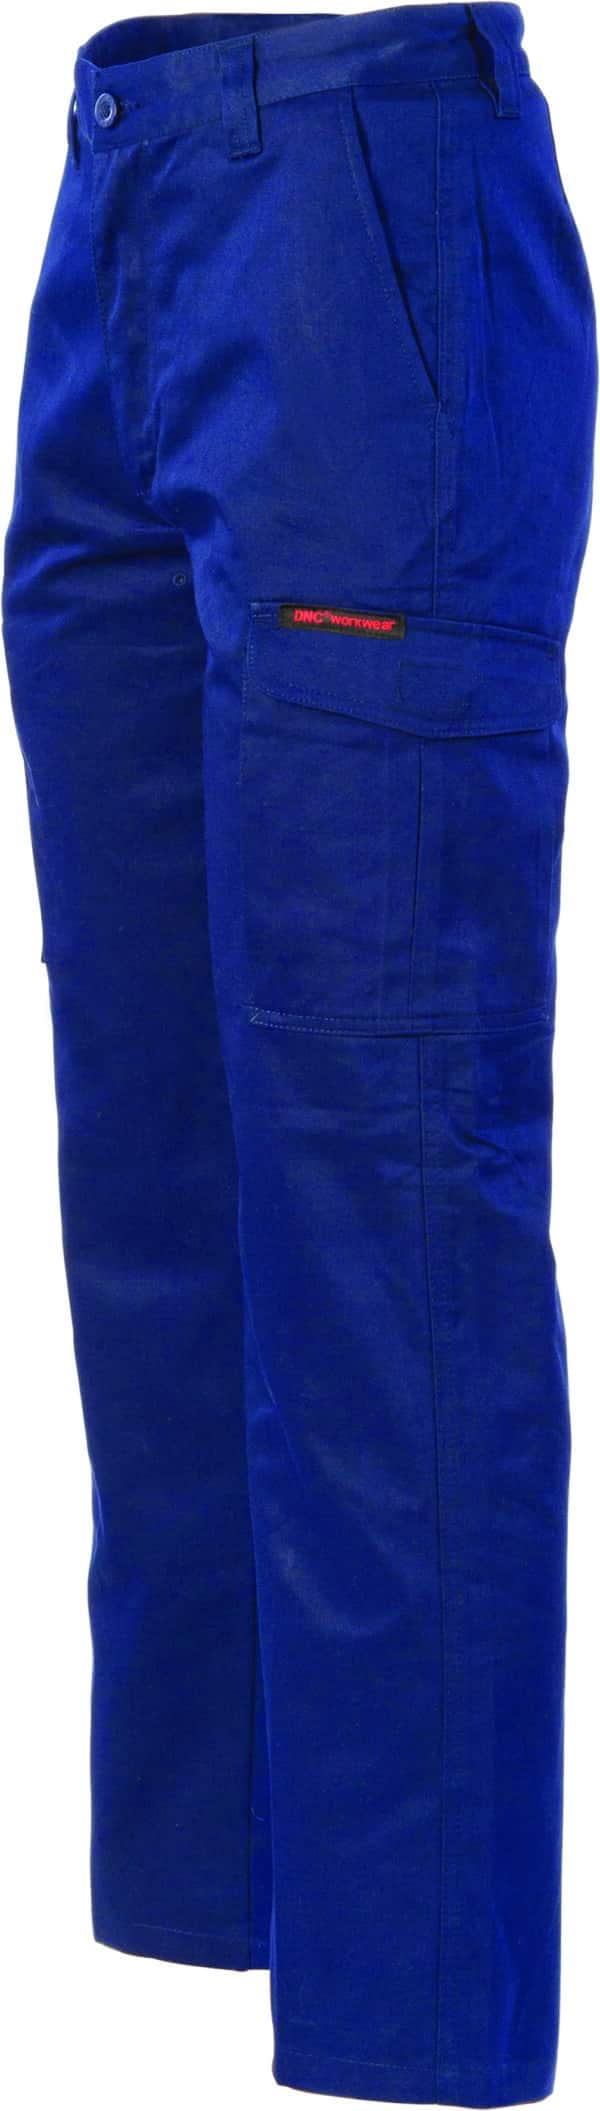 DNC Workwear Digga Cool-Breeze Cargo Pants